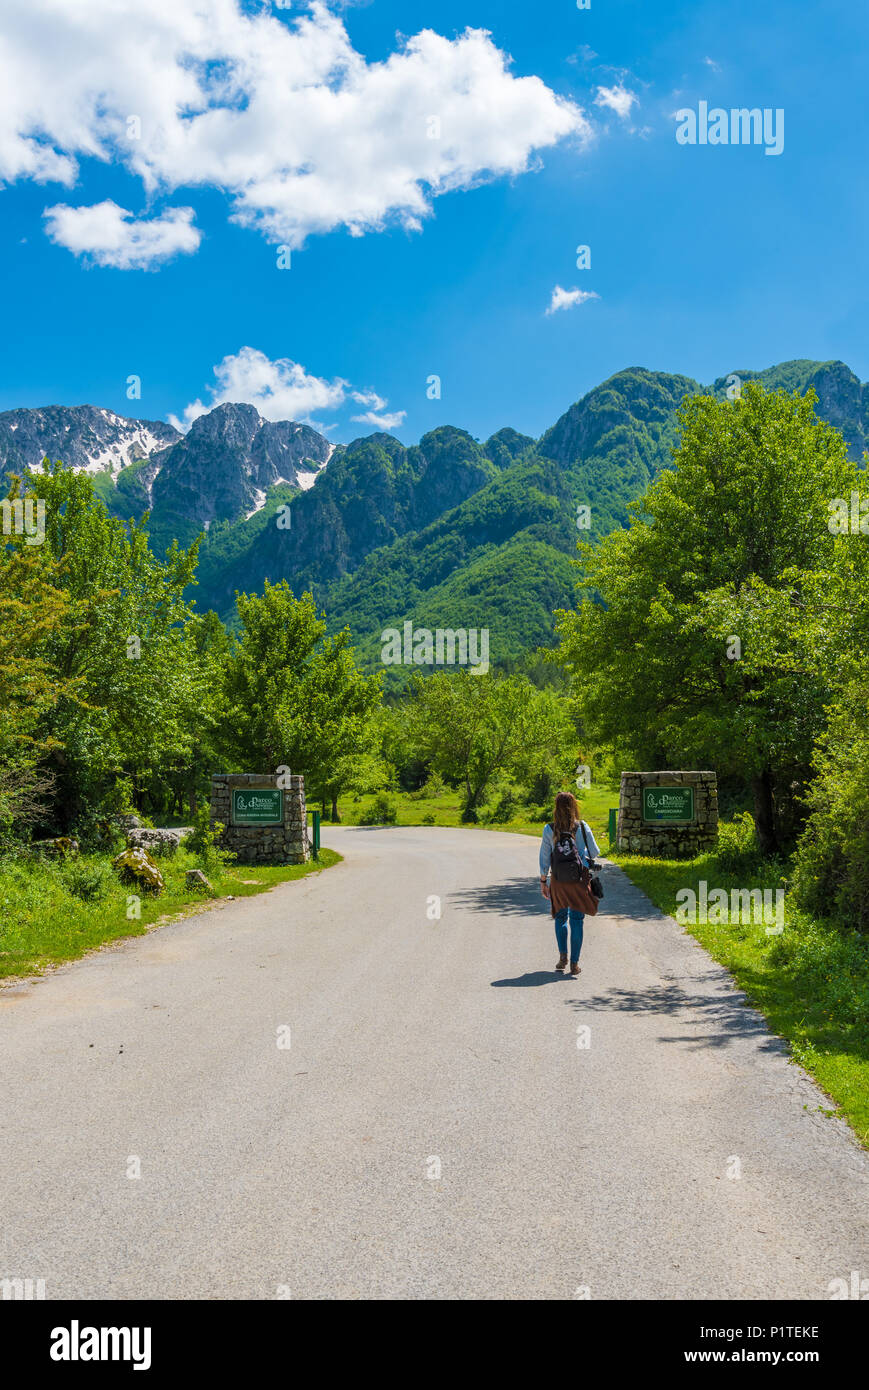 Parco nazionale d'Abruzzo, Lazio e Molise (Italia) - La Primavera in montagna italiana riserva naturale, con paesaggi, animali selvatici e la Camosciara Foto Stock